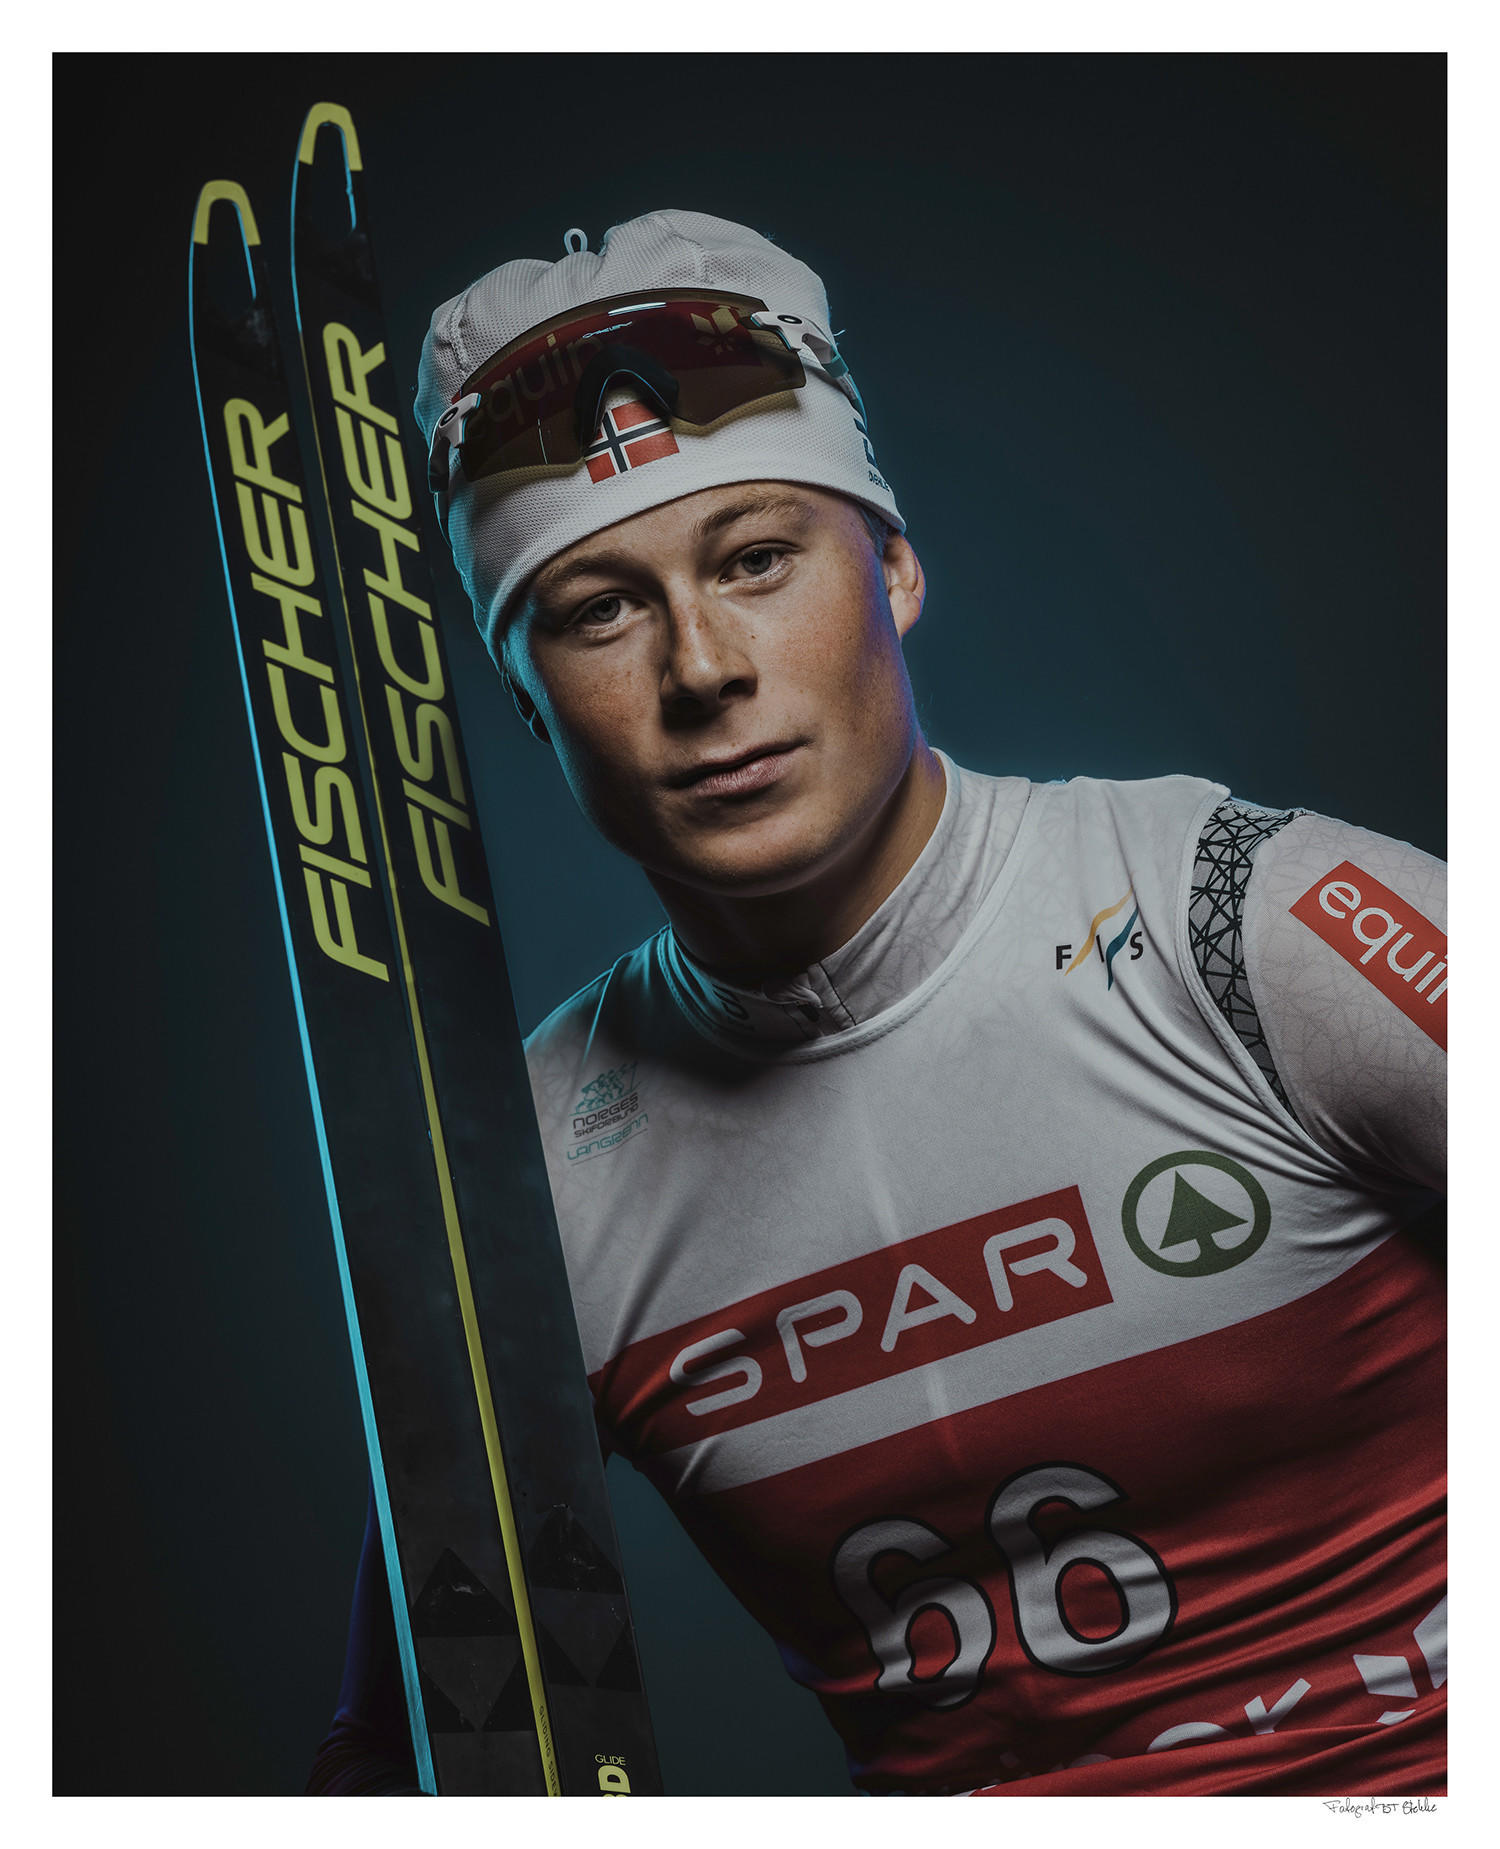 Bjarte mottok Talentstipend: - Mitt mål er å bli en av verdens beste skiløpere!